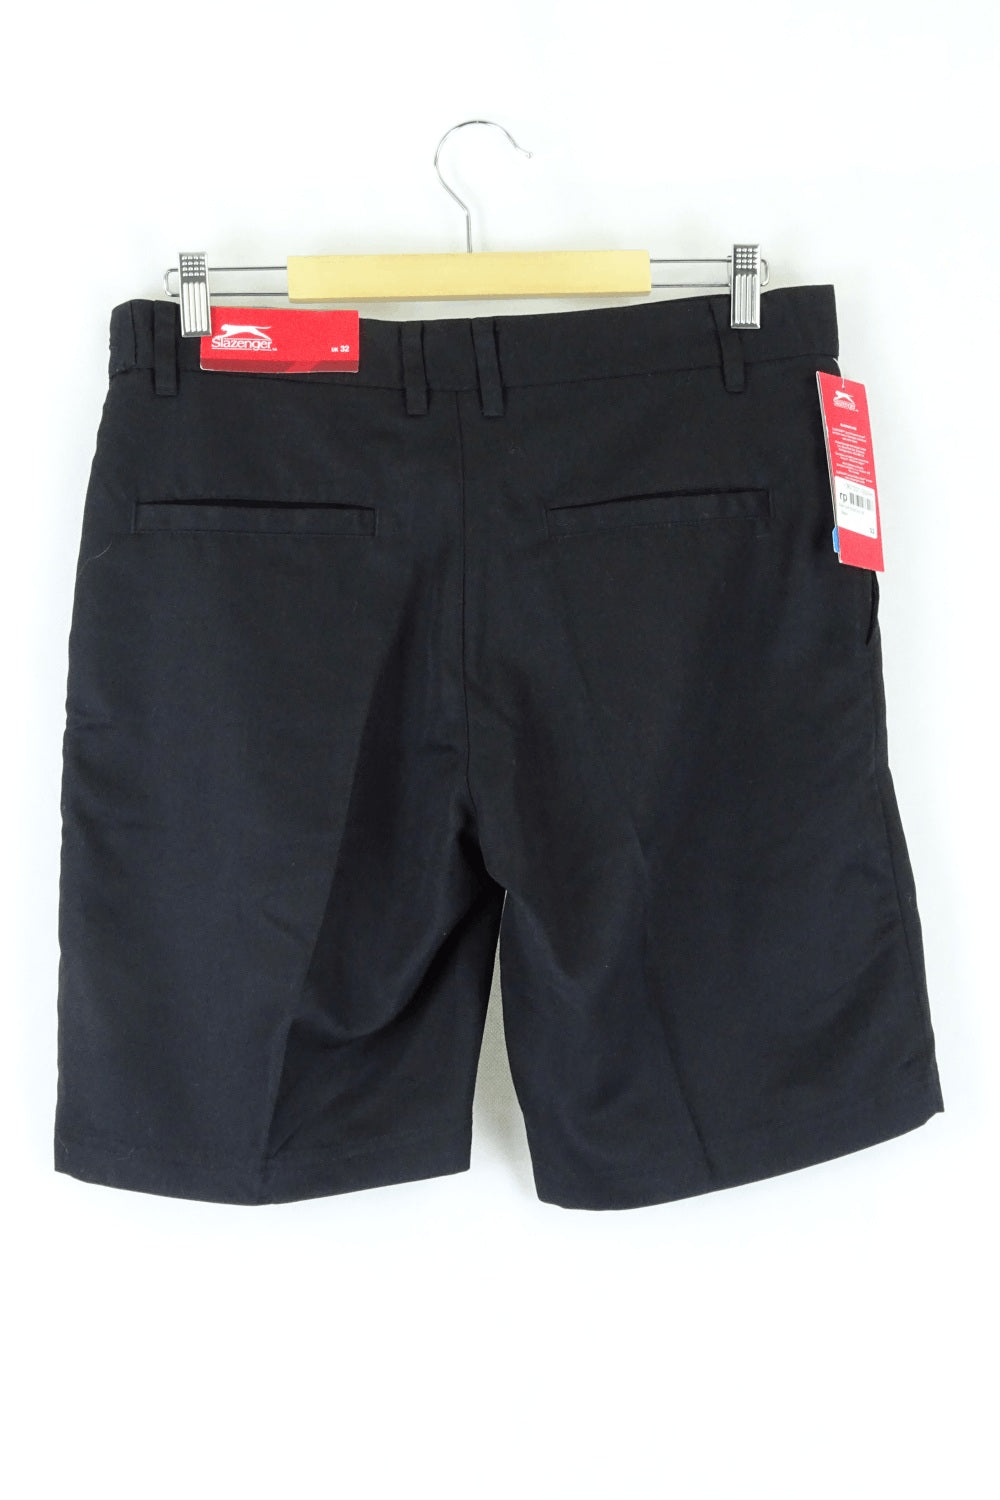 Slazenger Black Shorts 32